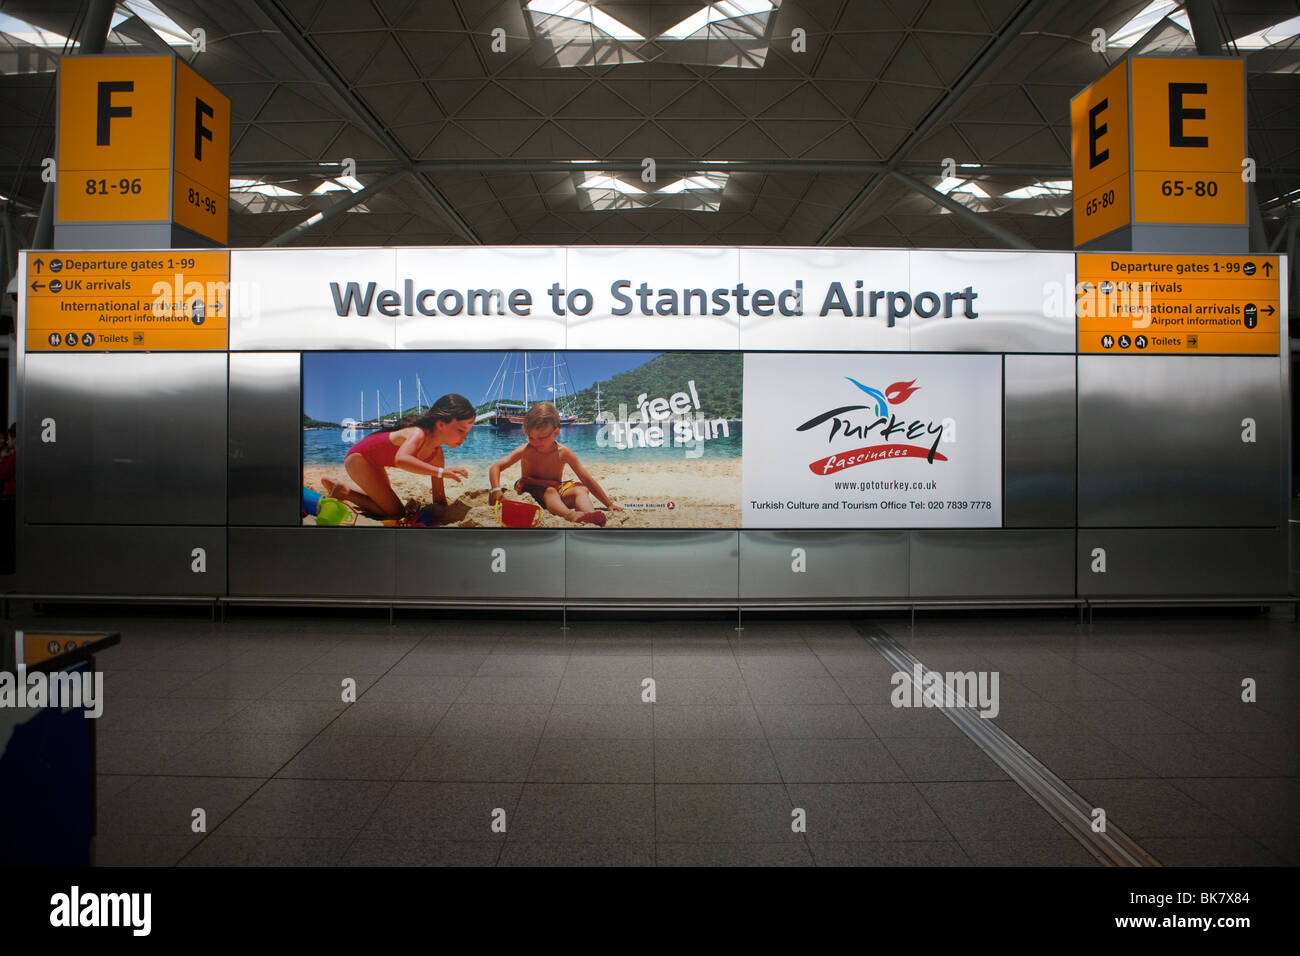 Benvenuti all'Aeroporto di Stansted segno all'interno del terminale dell'aeroporto di London Stansted in Essex Foto Stock